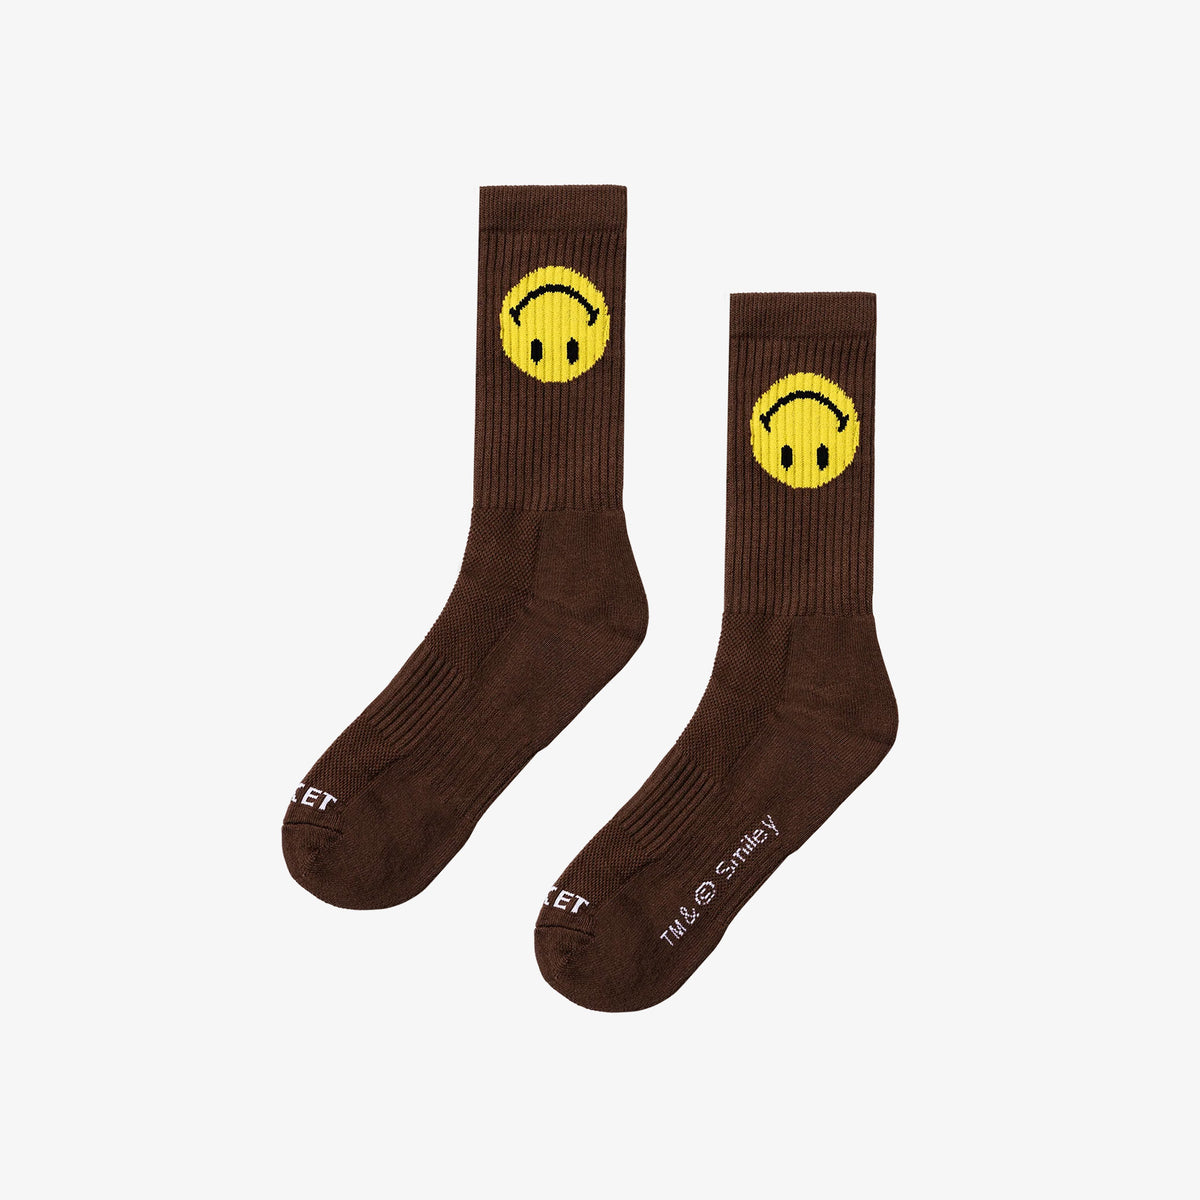 Smiley Upside Down Socks - Brown